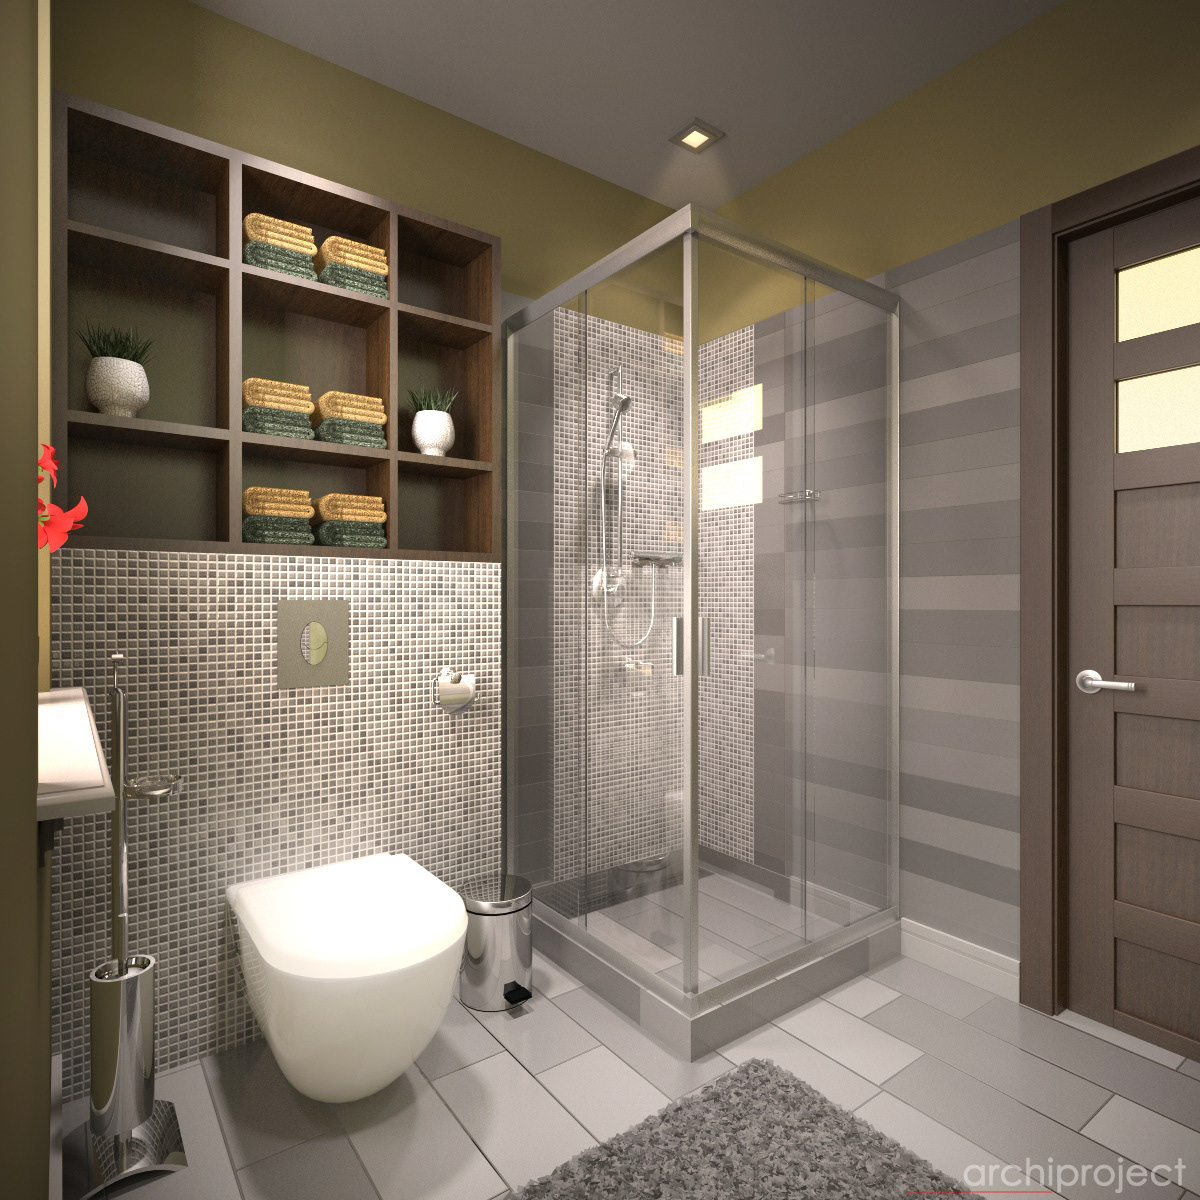 bathroom bathroom design sanitary furniture tiles Interior architect designer interior designer Interior Architect